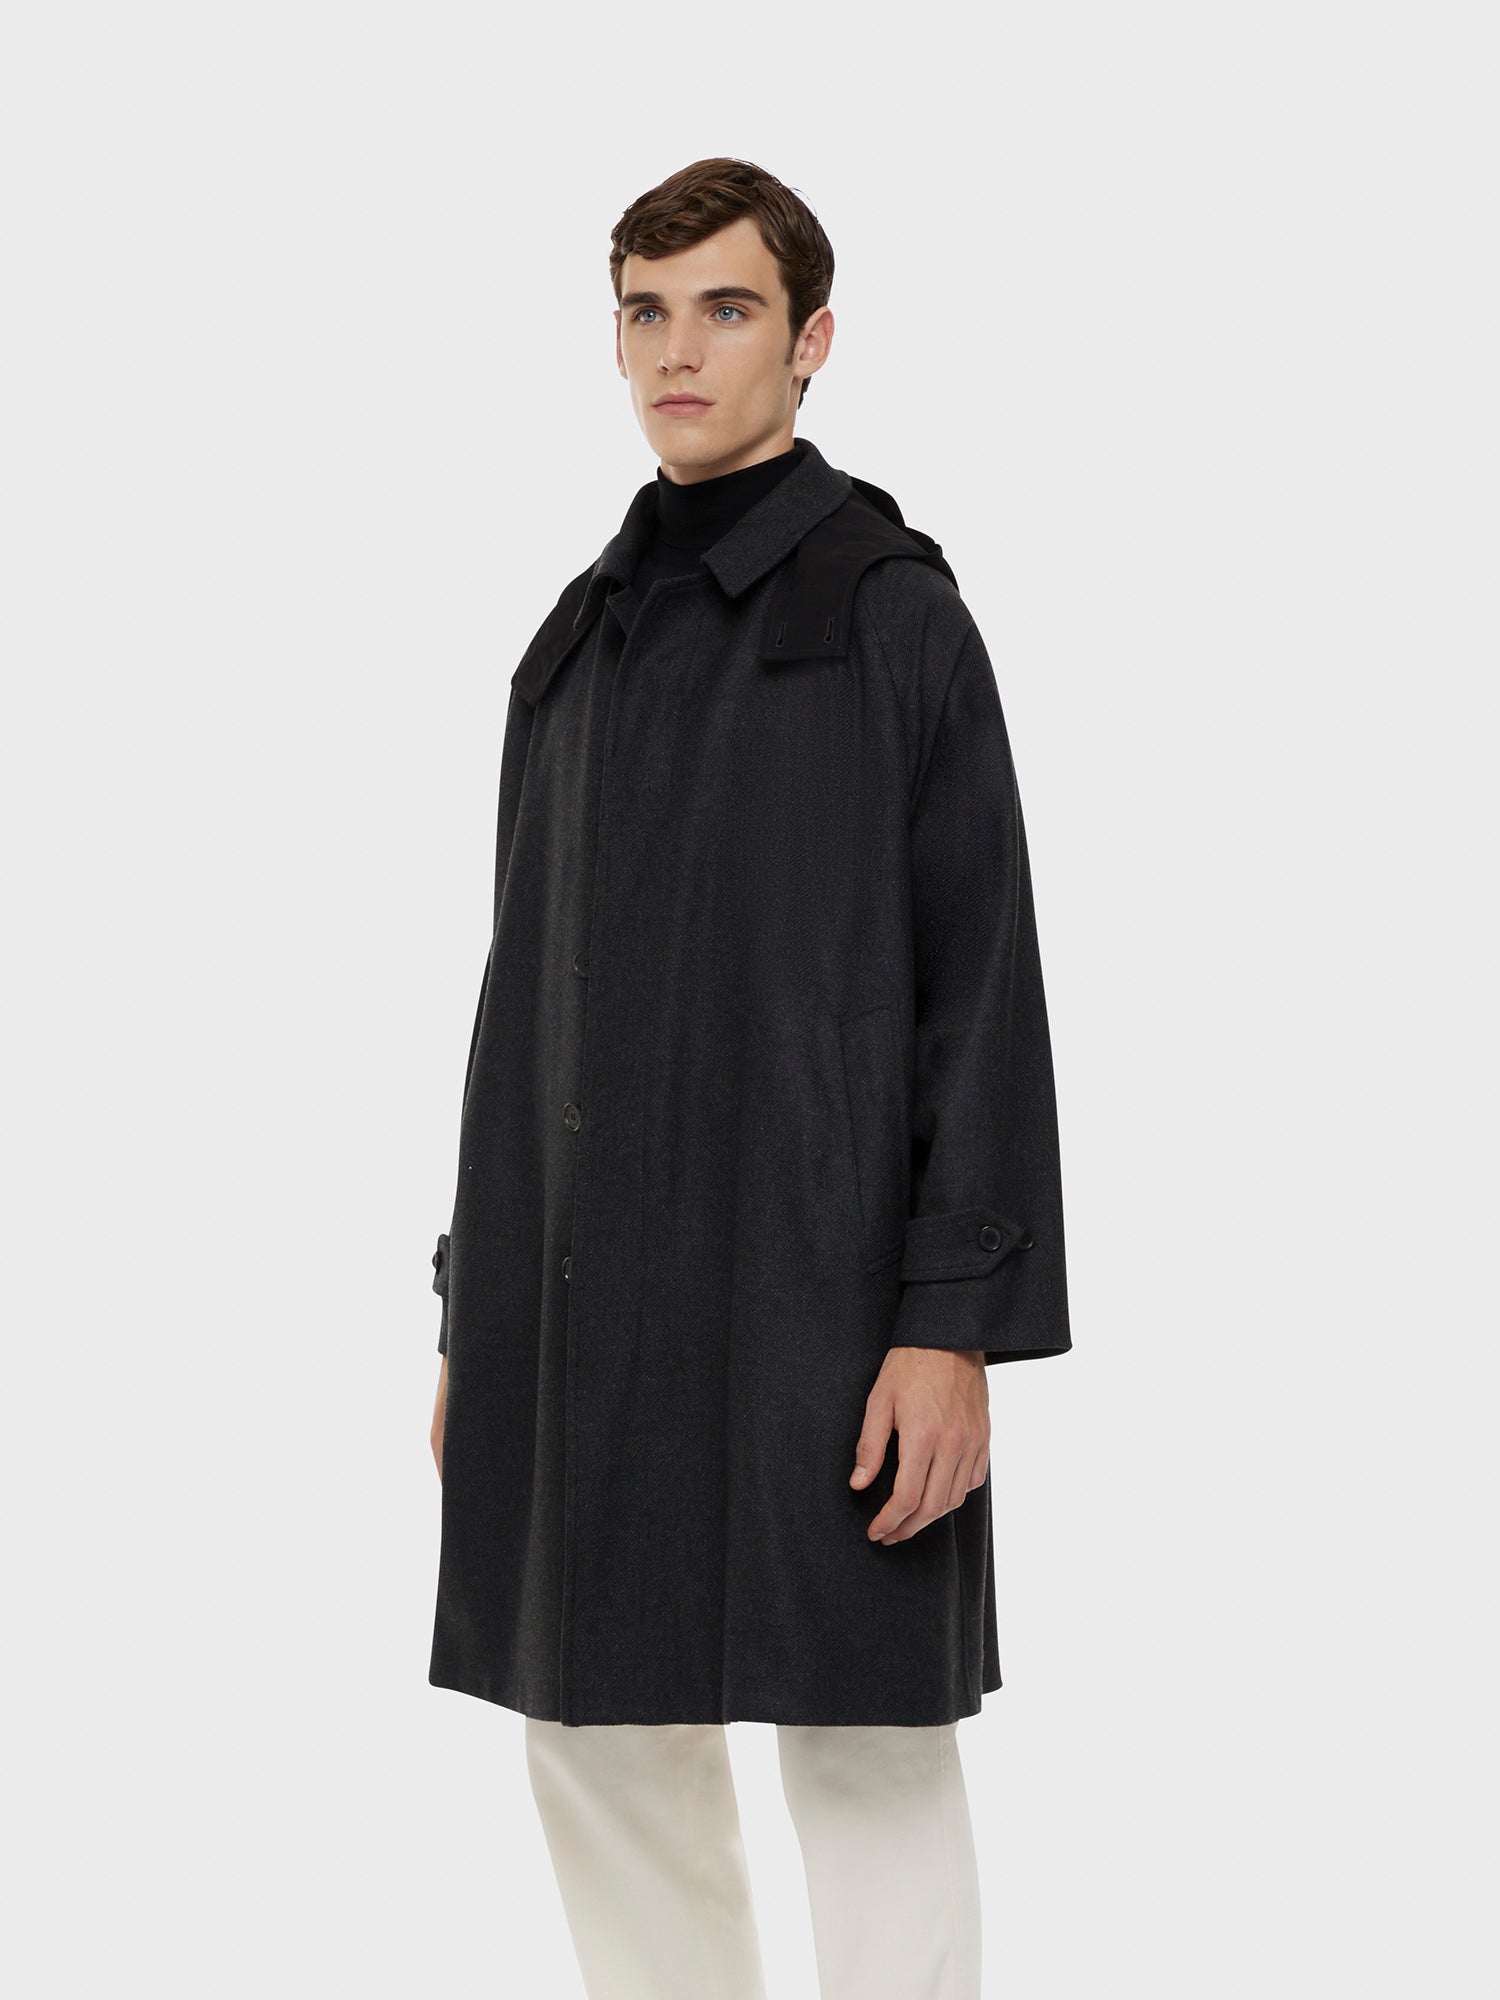 Caruso Menswear Abbigliamento Uomo Cappotto con cappuccio in lana e cashmere grigio antracite indossato front